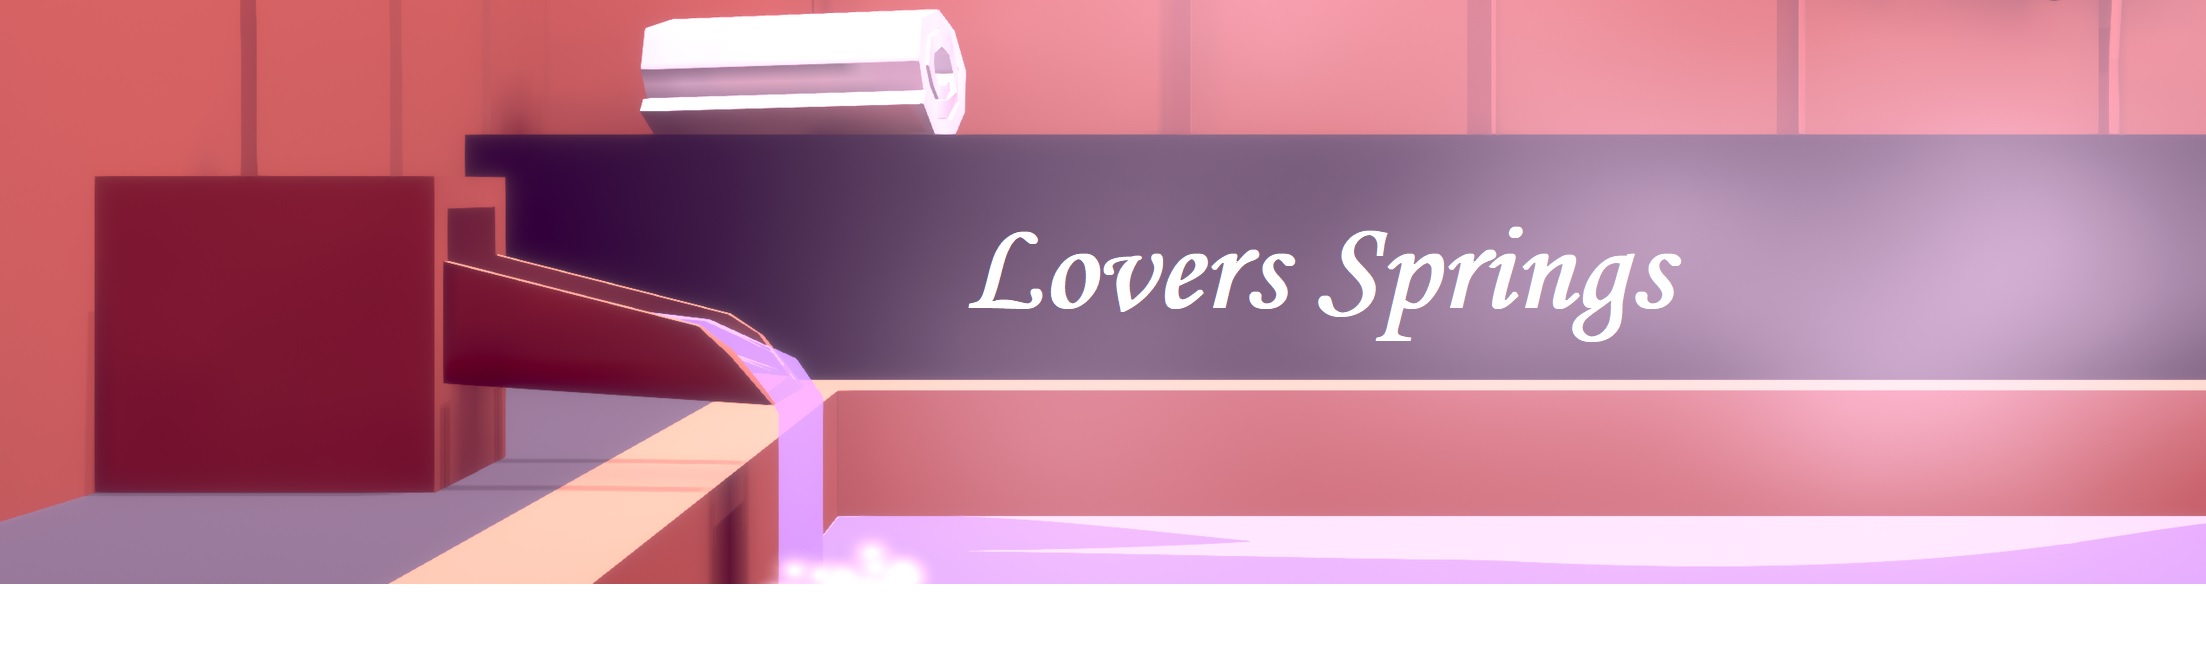 Lovers Springs